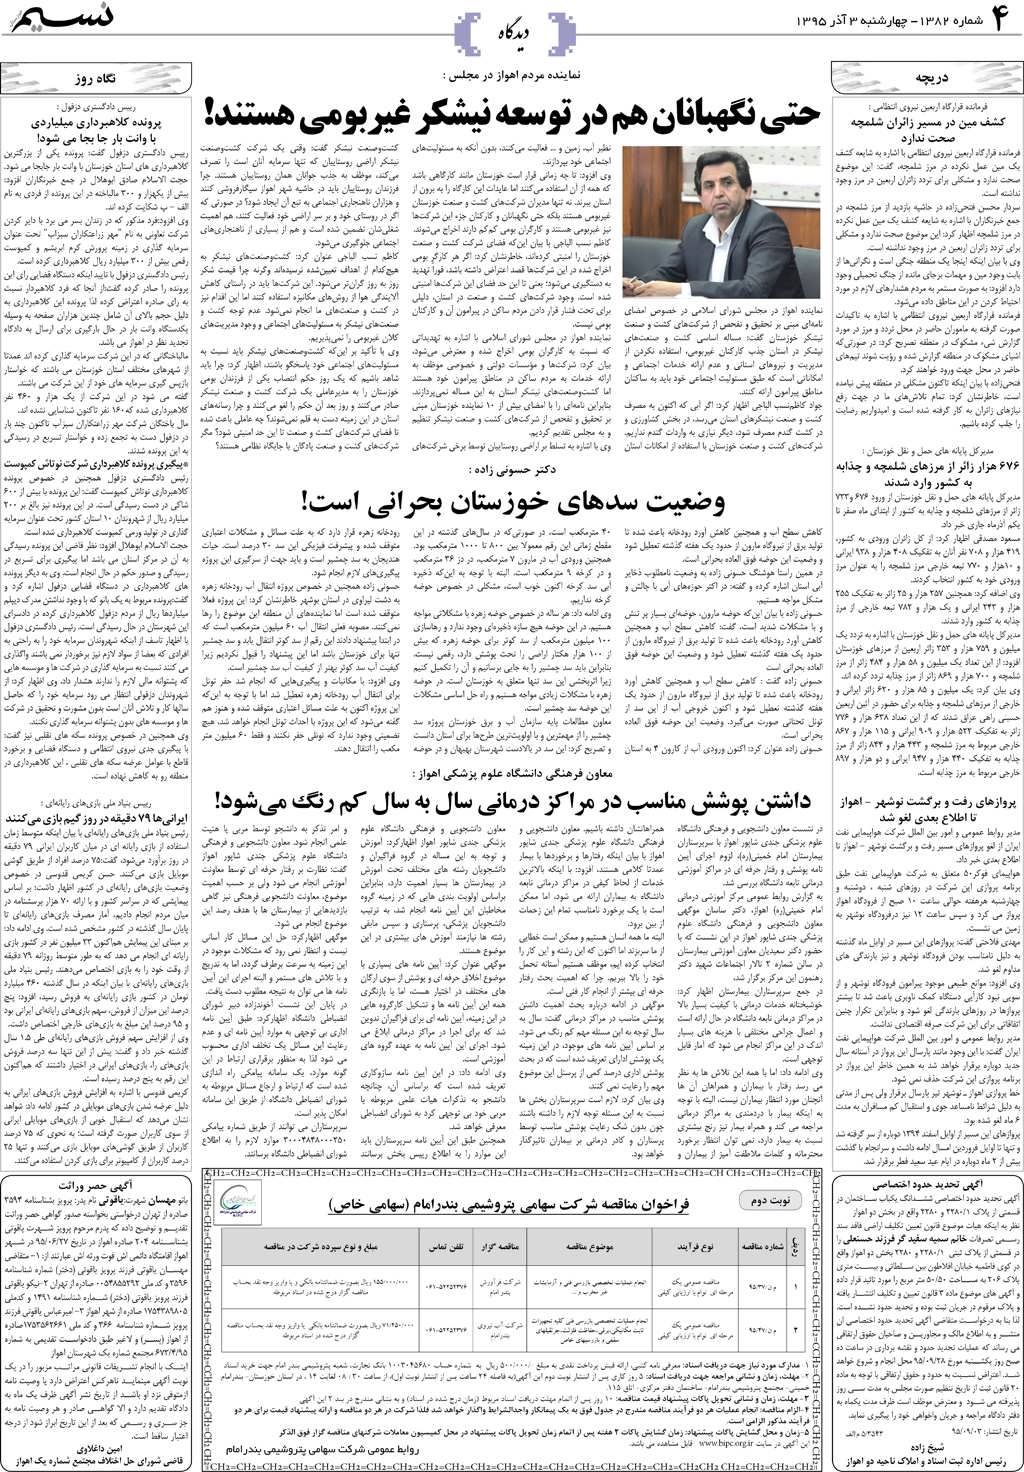 صفحه دیدگاه روزنامه نسیم شماره 1382